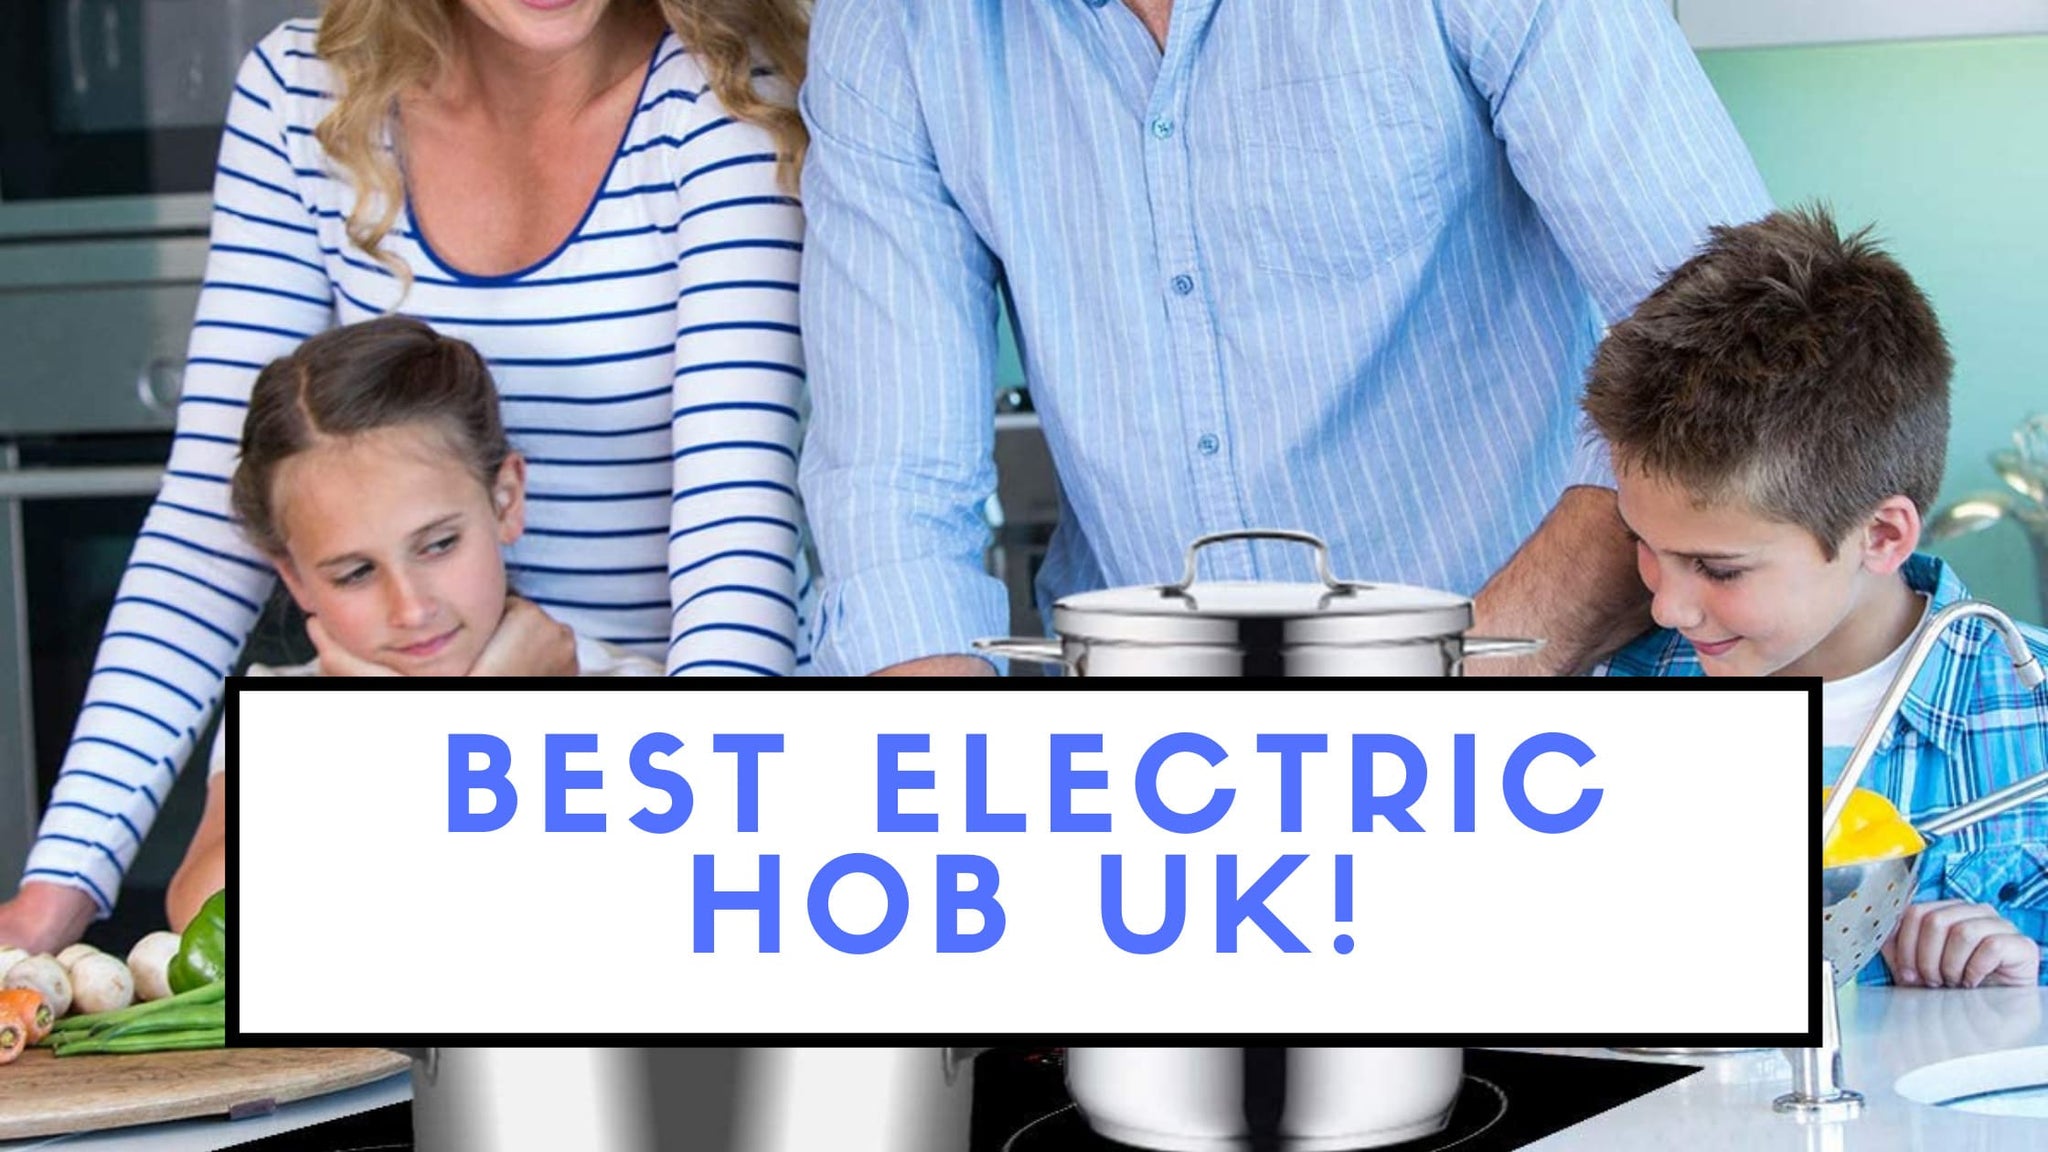 Best Electric Hob UK